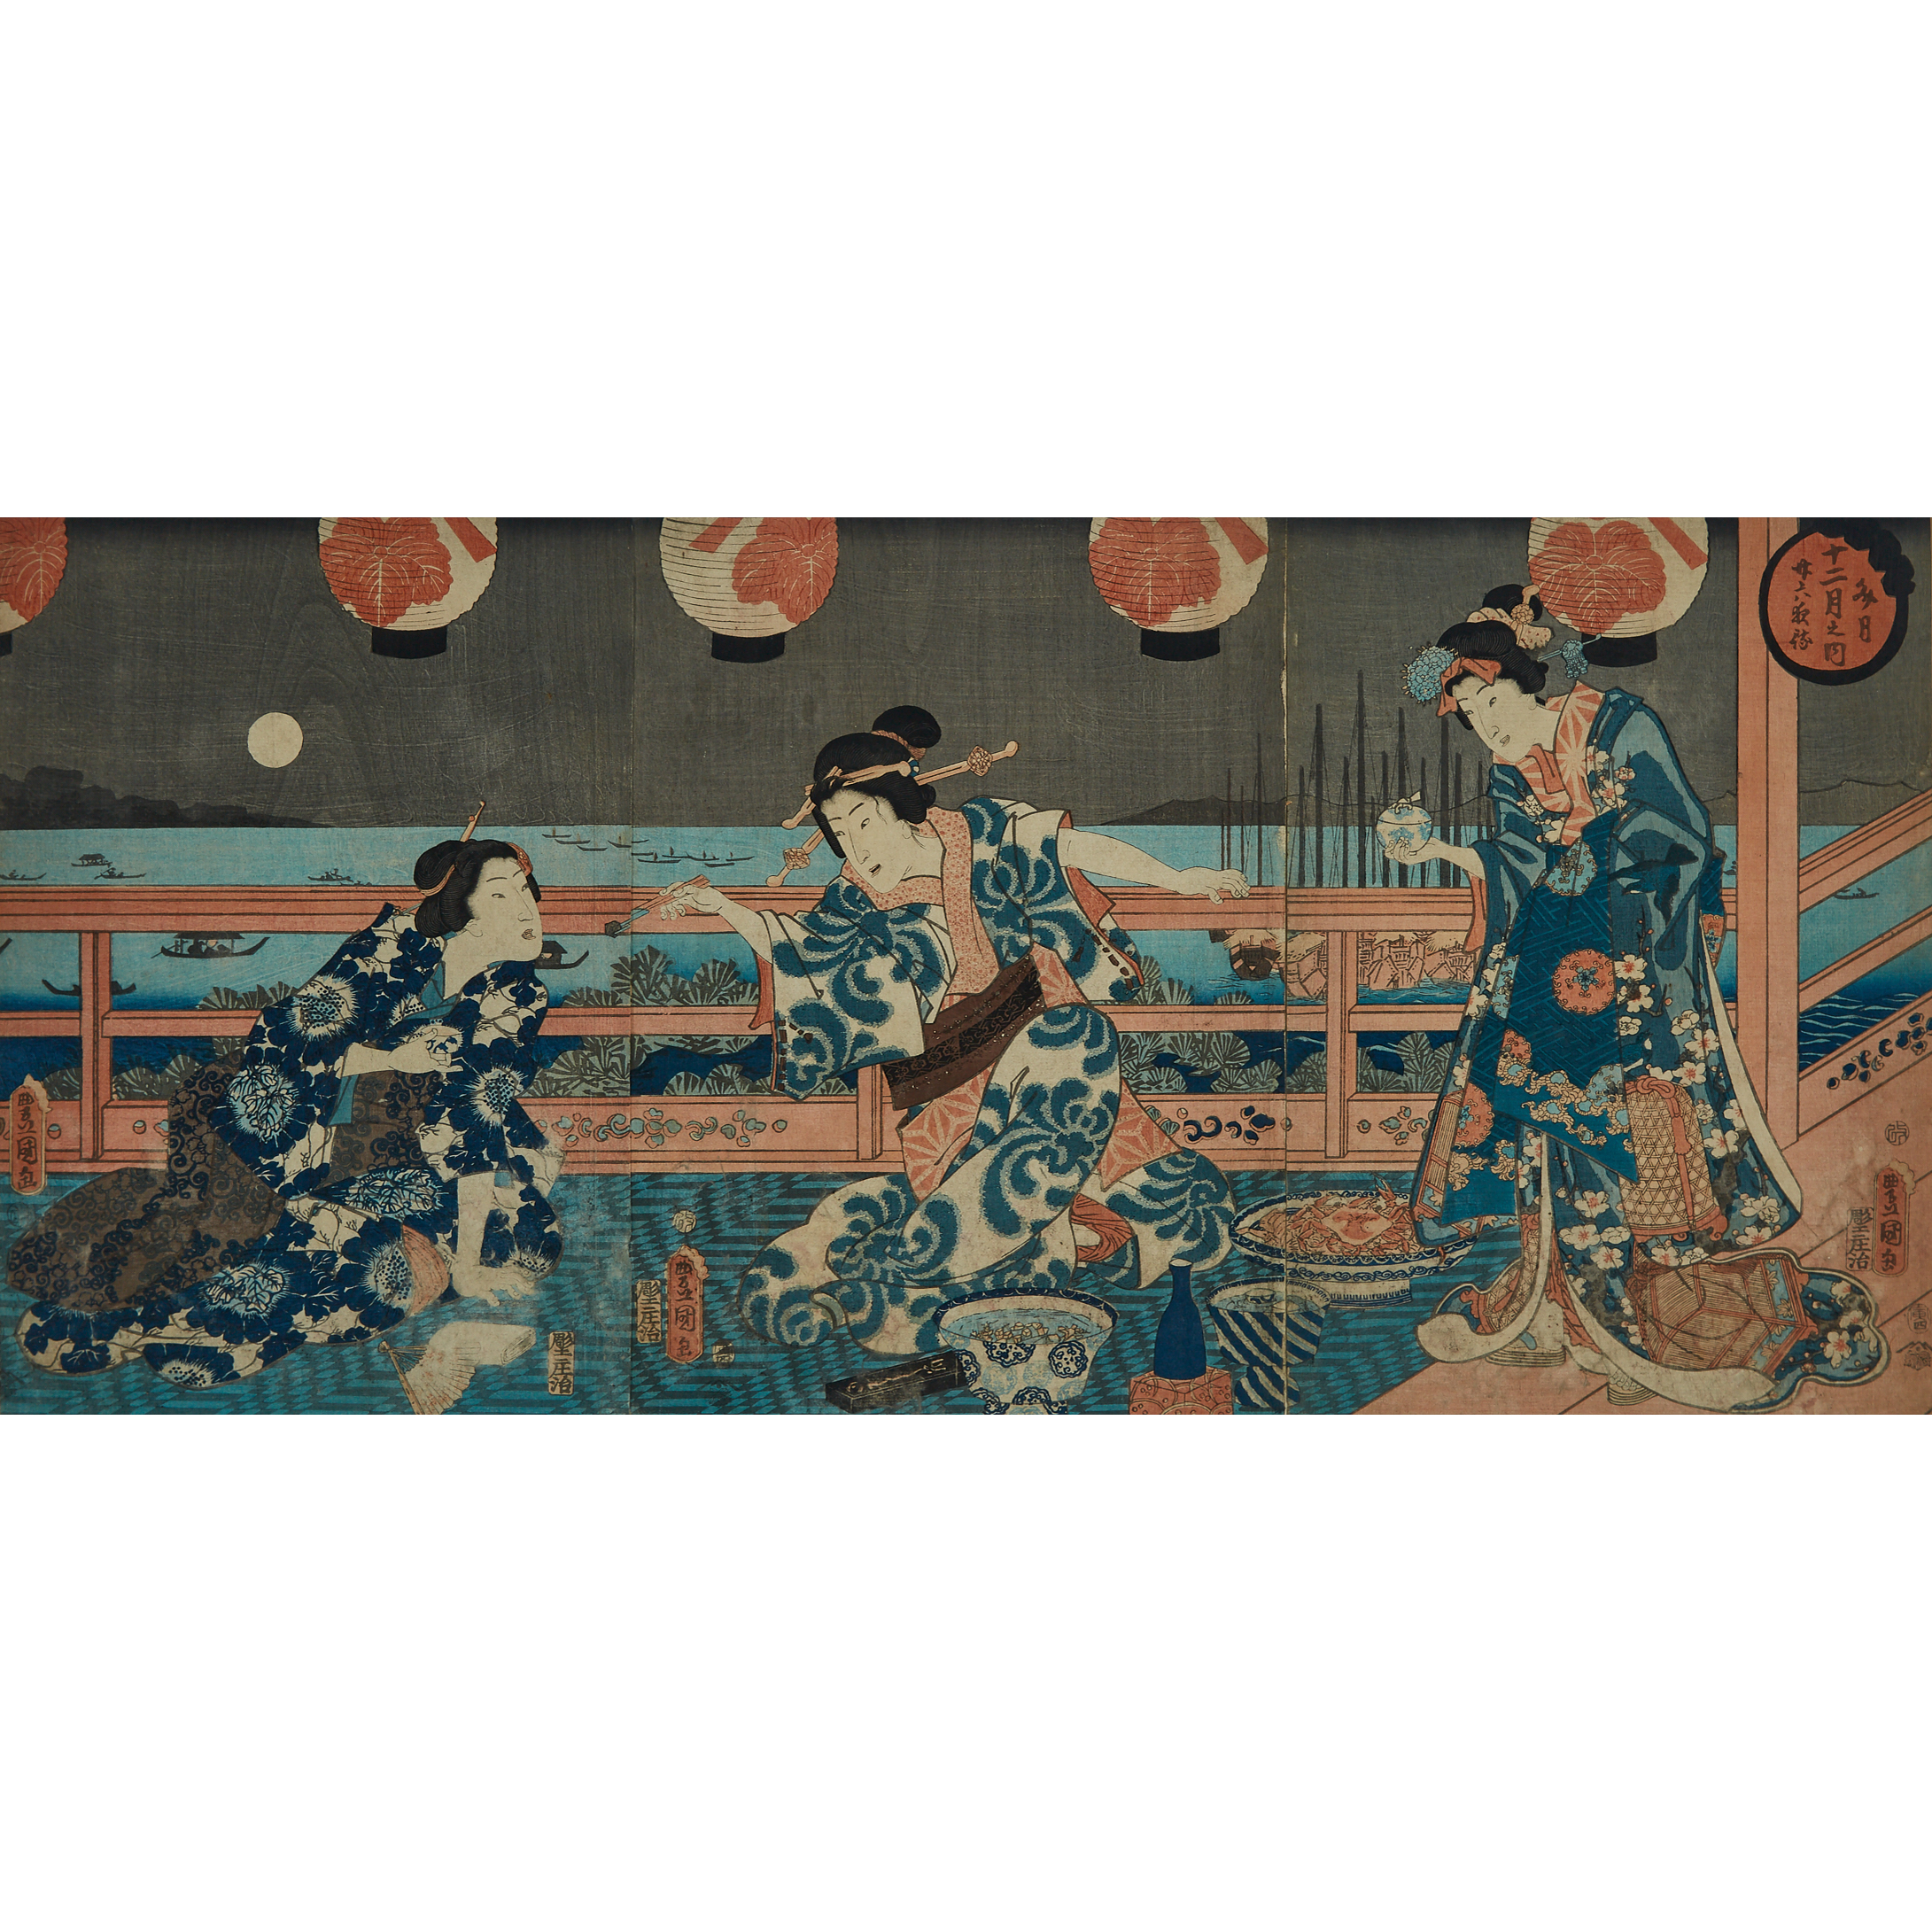 Utagawa Kunisada (Toyokuni III, 1786-1865), The Seventh Month: Waiting for the Moon, Circa 1854